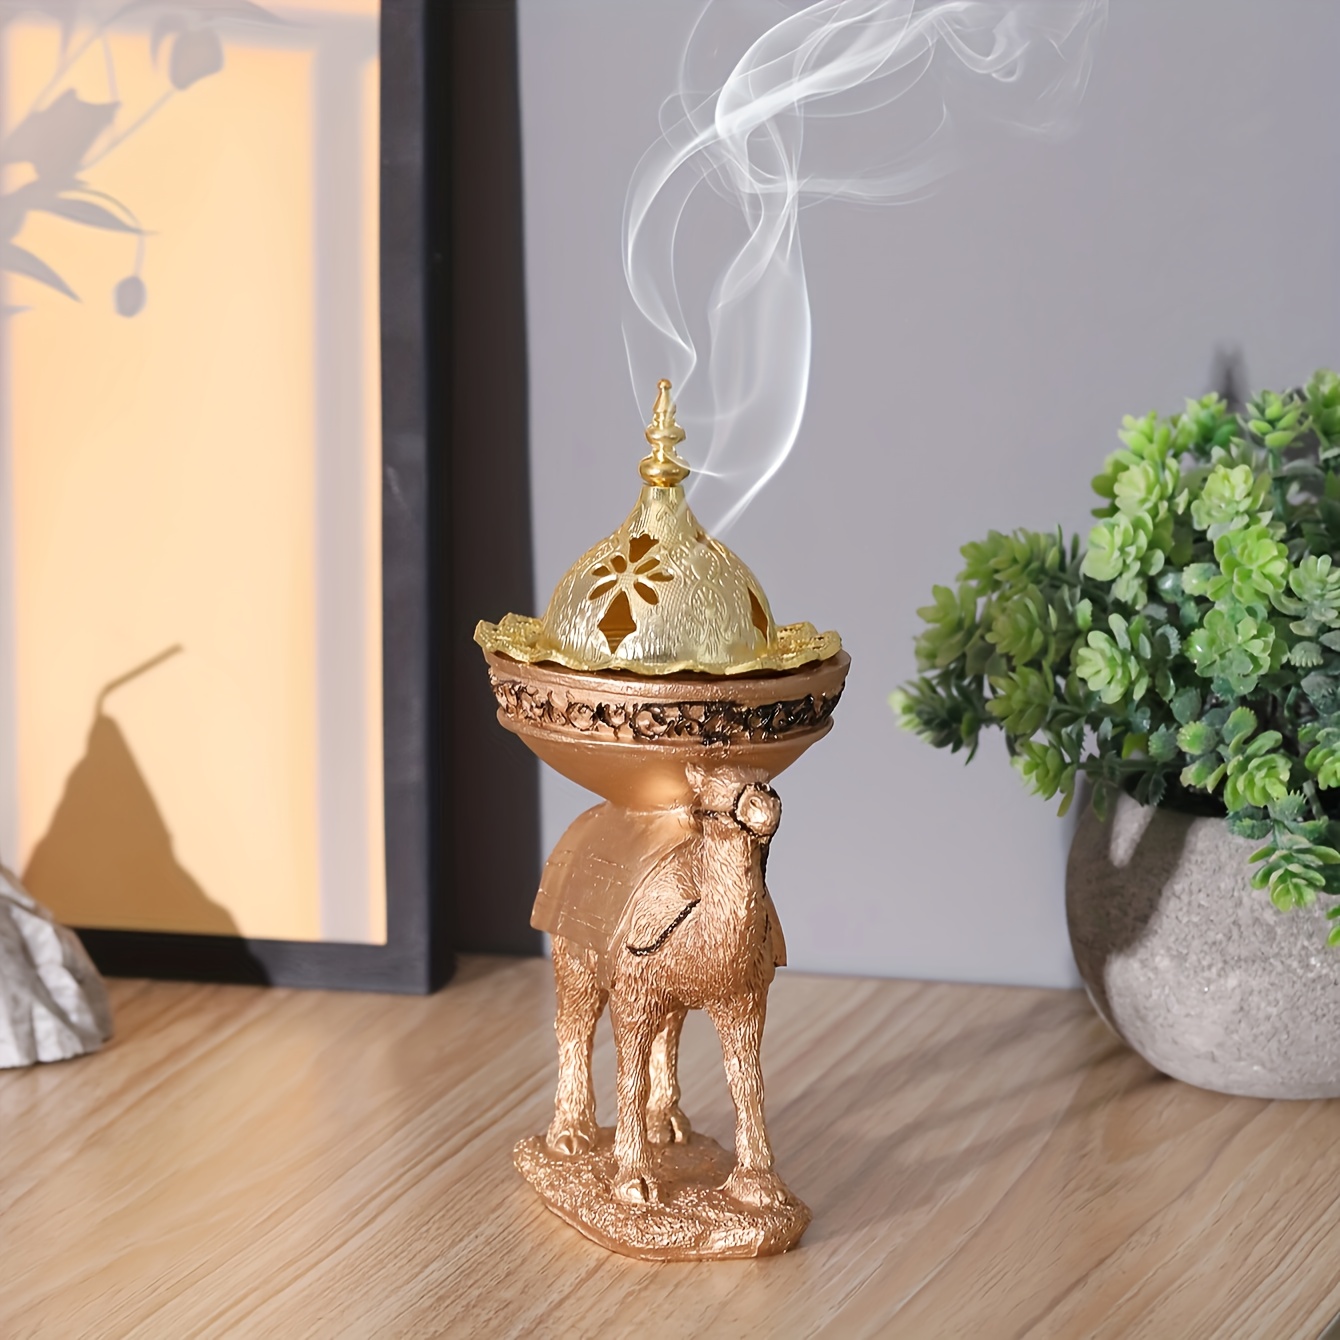 

1pc Resin Incense Holder, Resin Camel Atmosphere Decorative Incense Burner, Room Decor, Home Decor